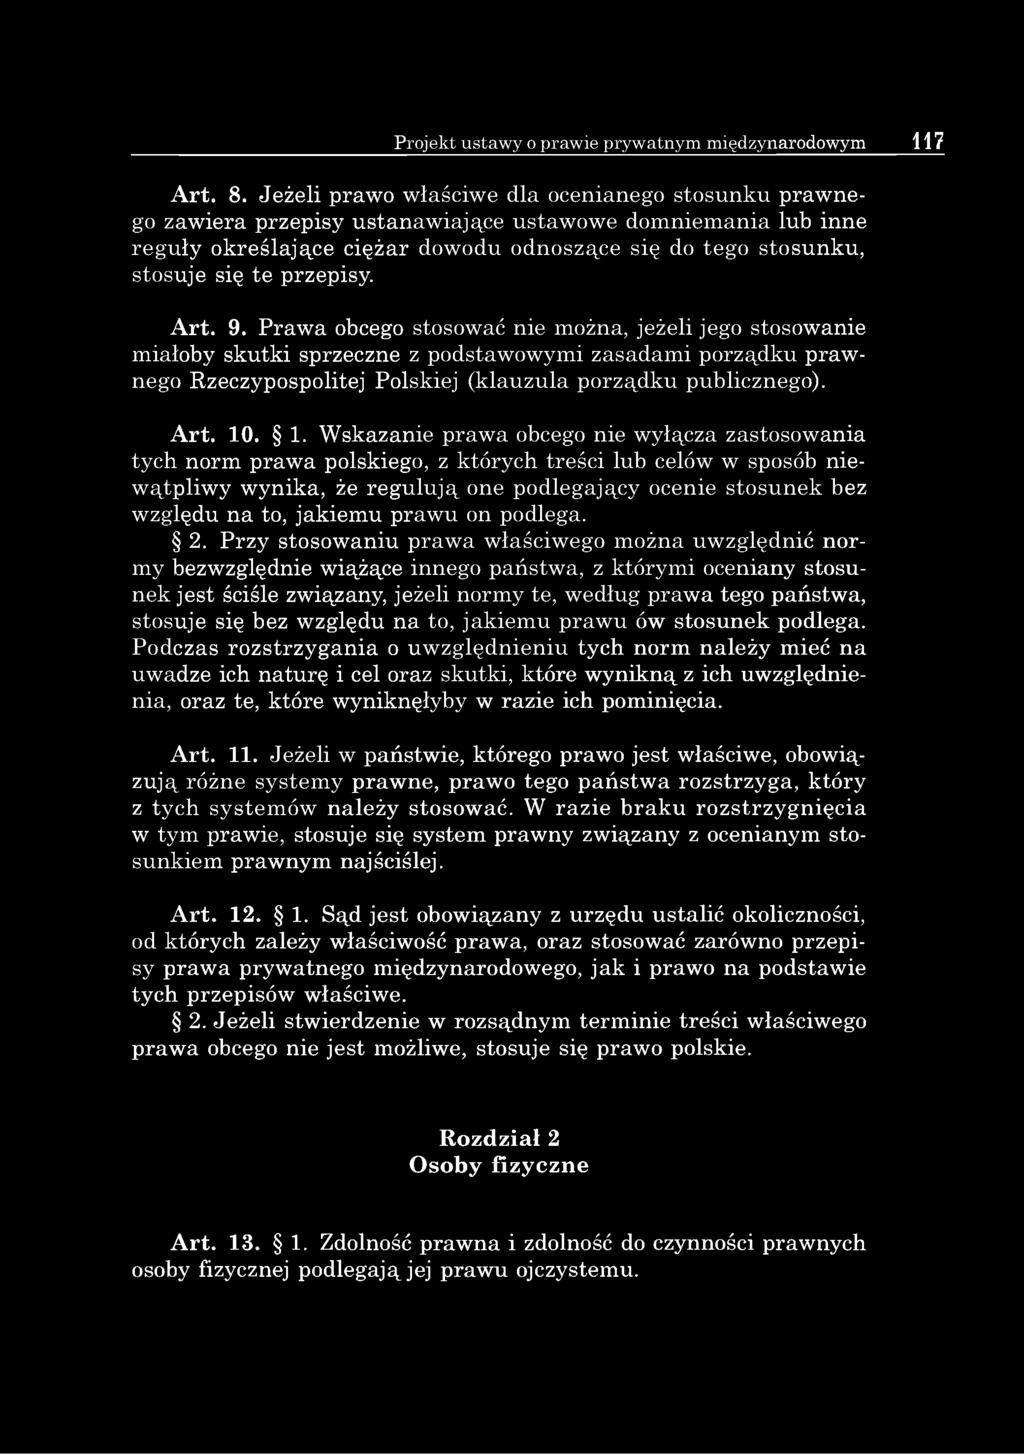 przepisy. Art. 9. Prawa obcego stosować nie można, jeżeli jego stosowanie miałoby skutki sprzeczne z podstawowymi zasadami porządku prawnego Rzeczypospolitej Polskiej (klauzula porządku publicznego).